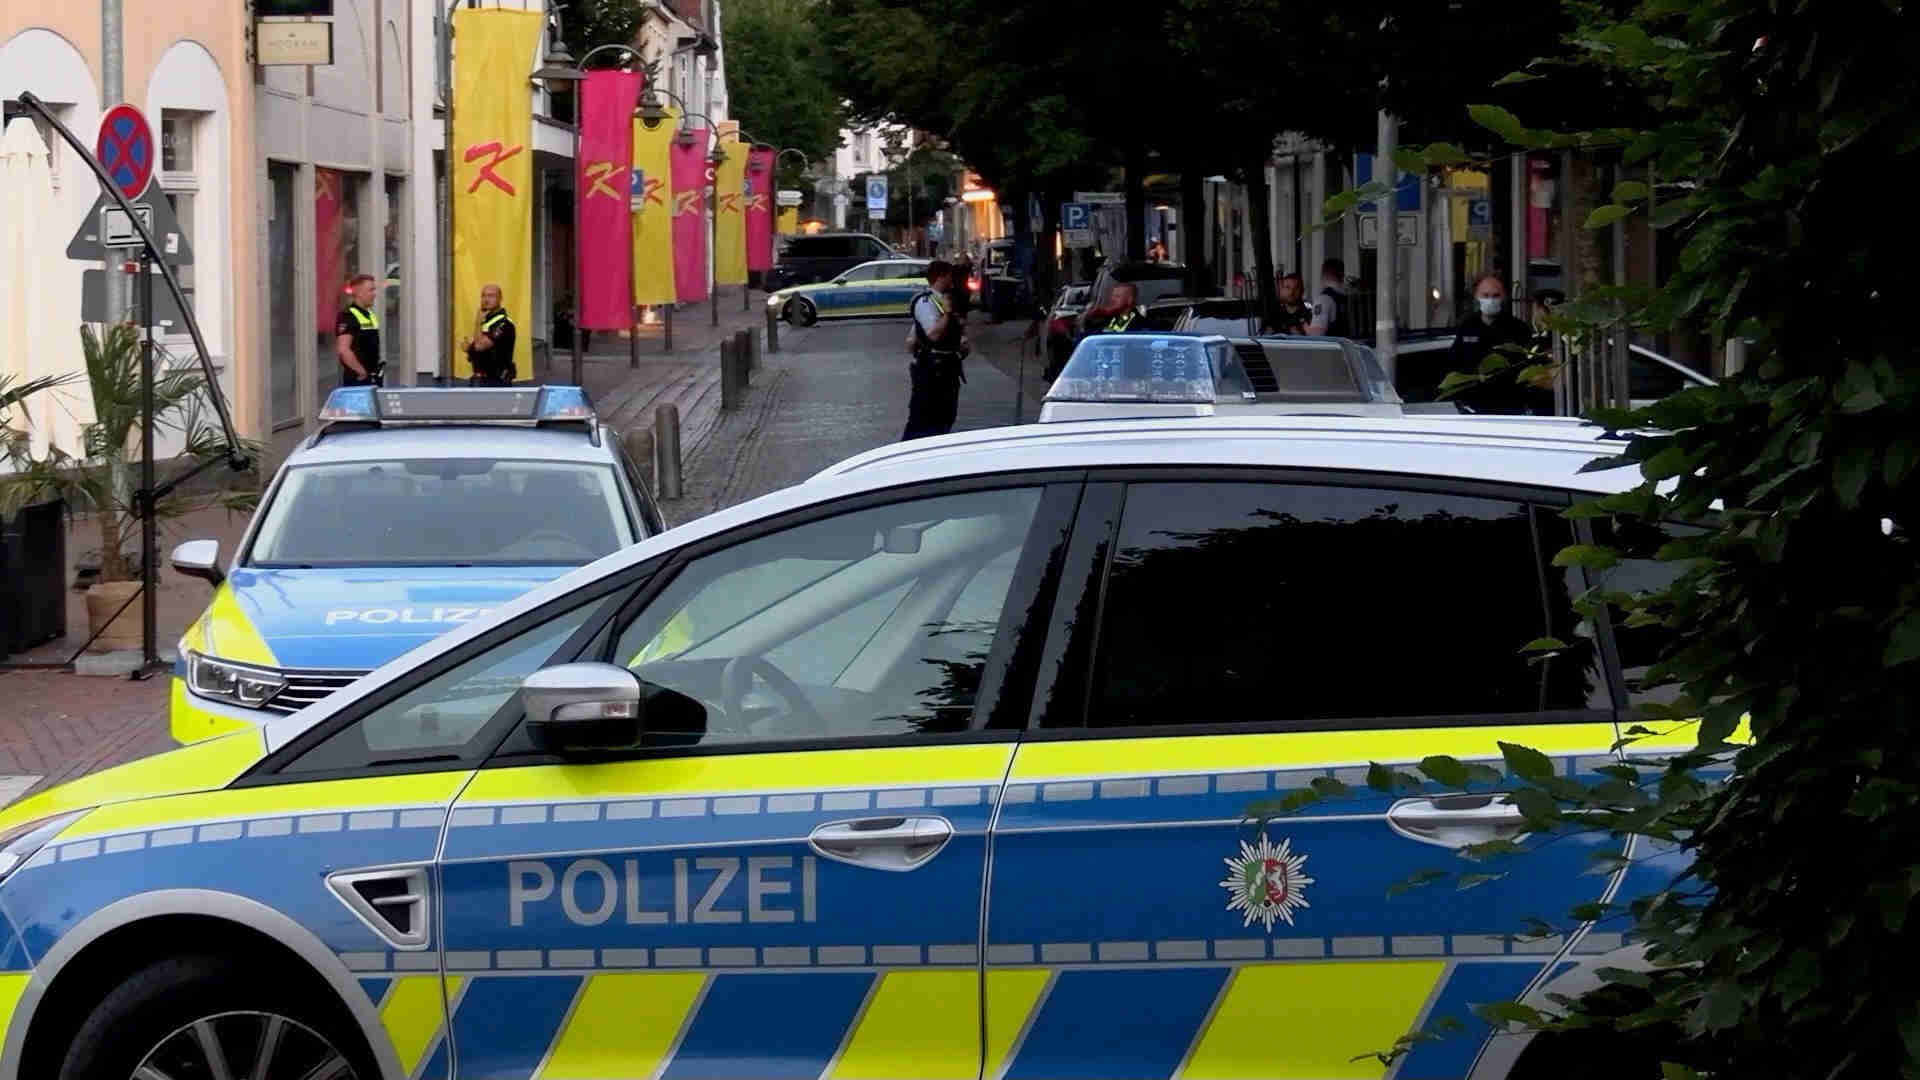 21-06-29-Diepholz-Polizeieinsatz-